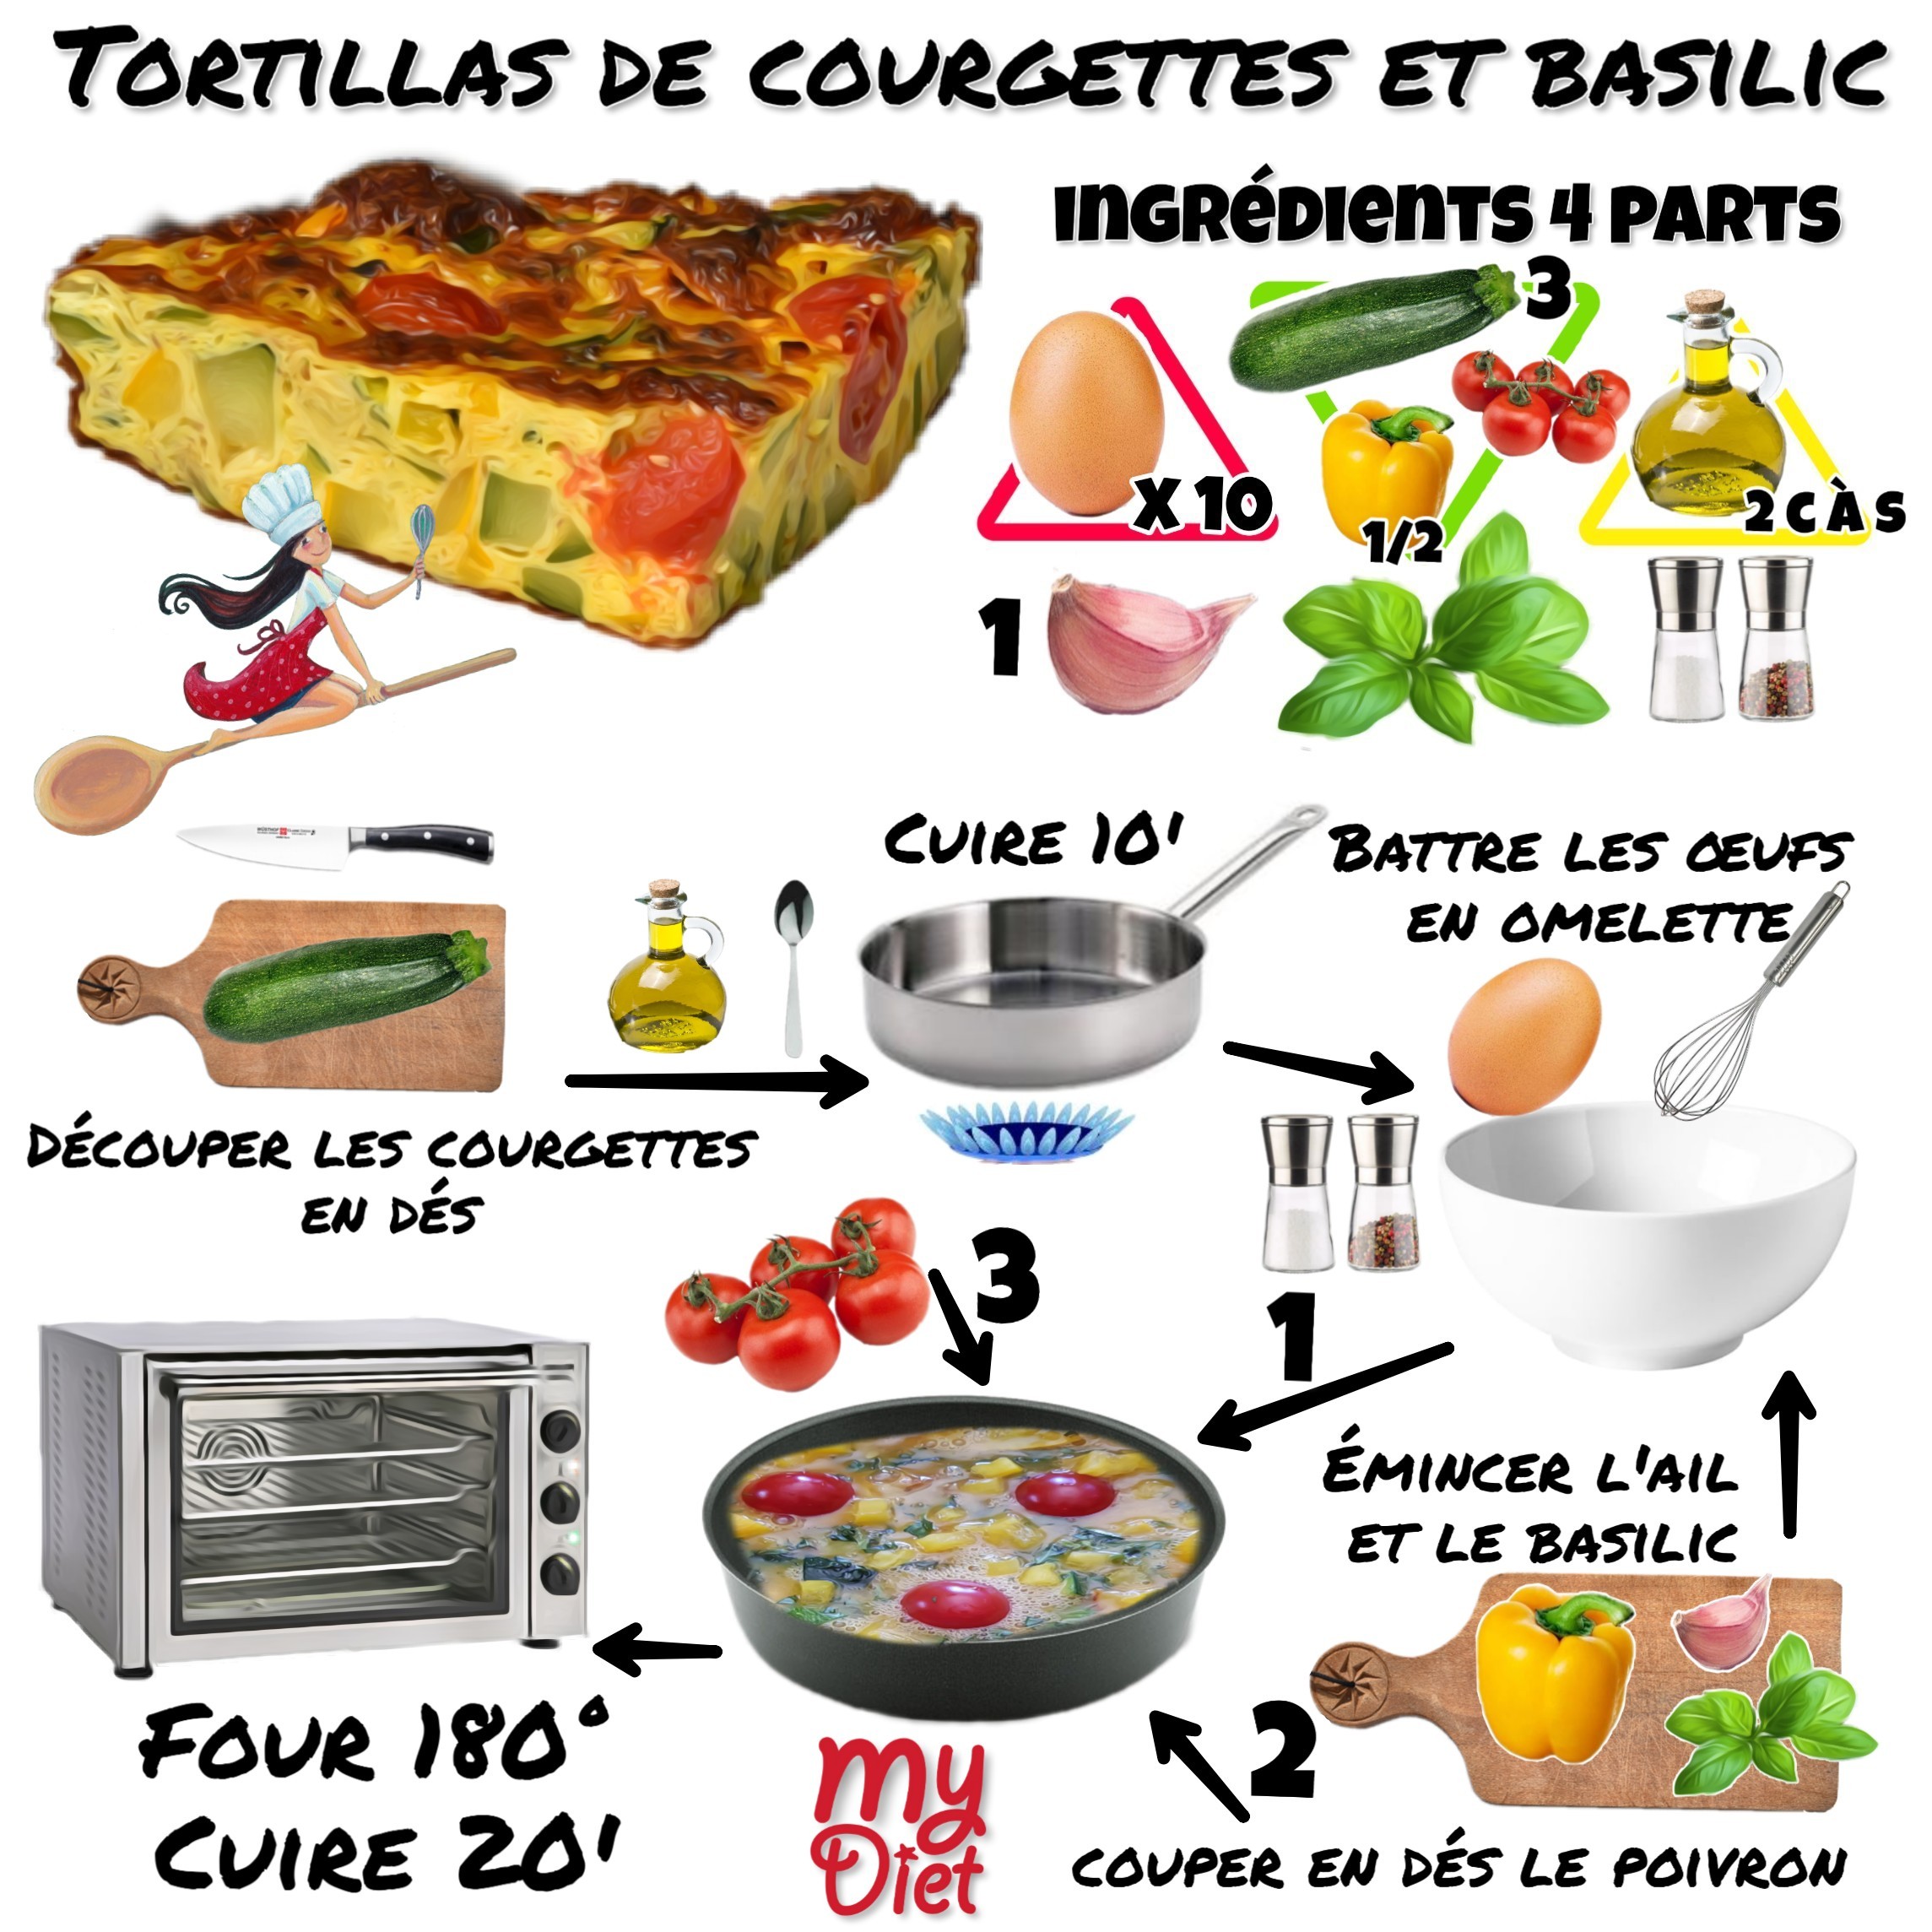 Tortillas de courgettes et basilic